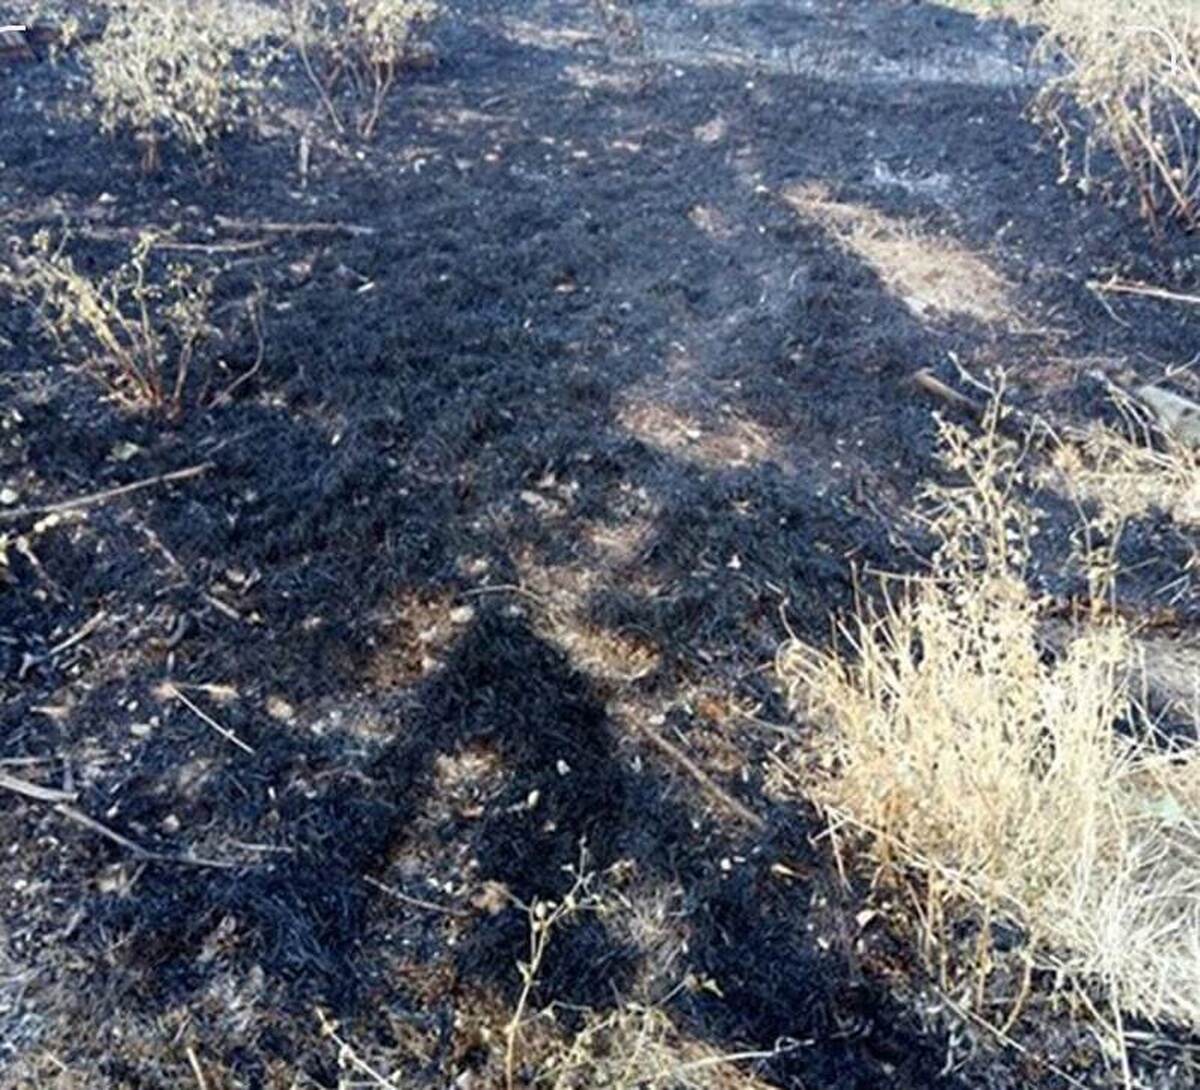 ۵۰ هکتار از اراضی پلدختر در آتش سوخت